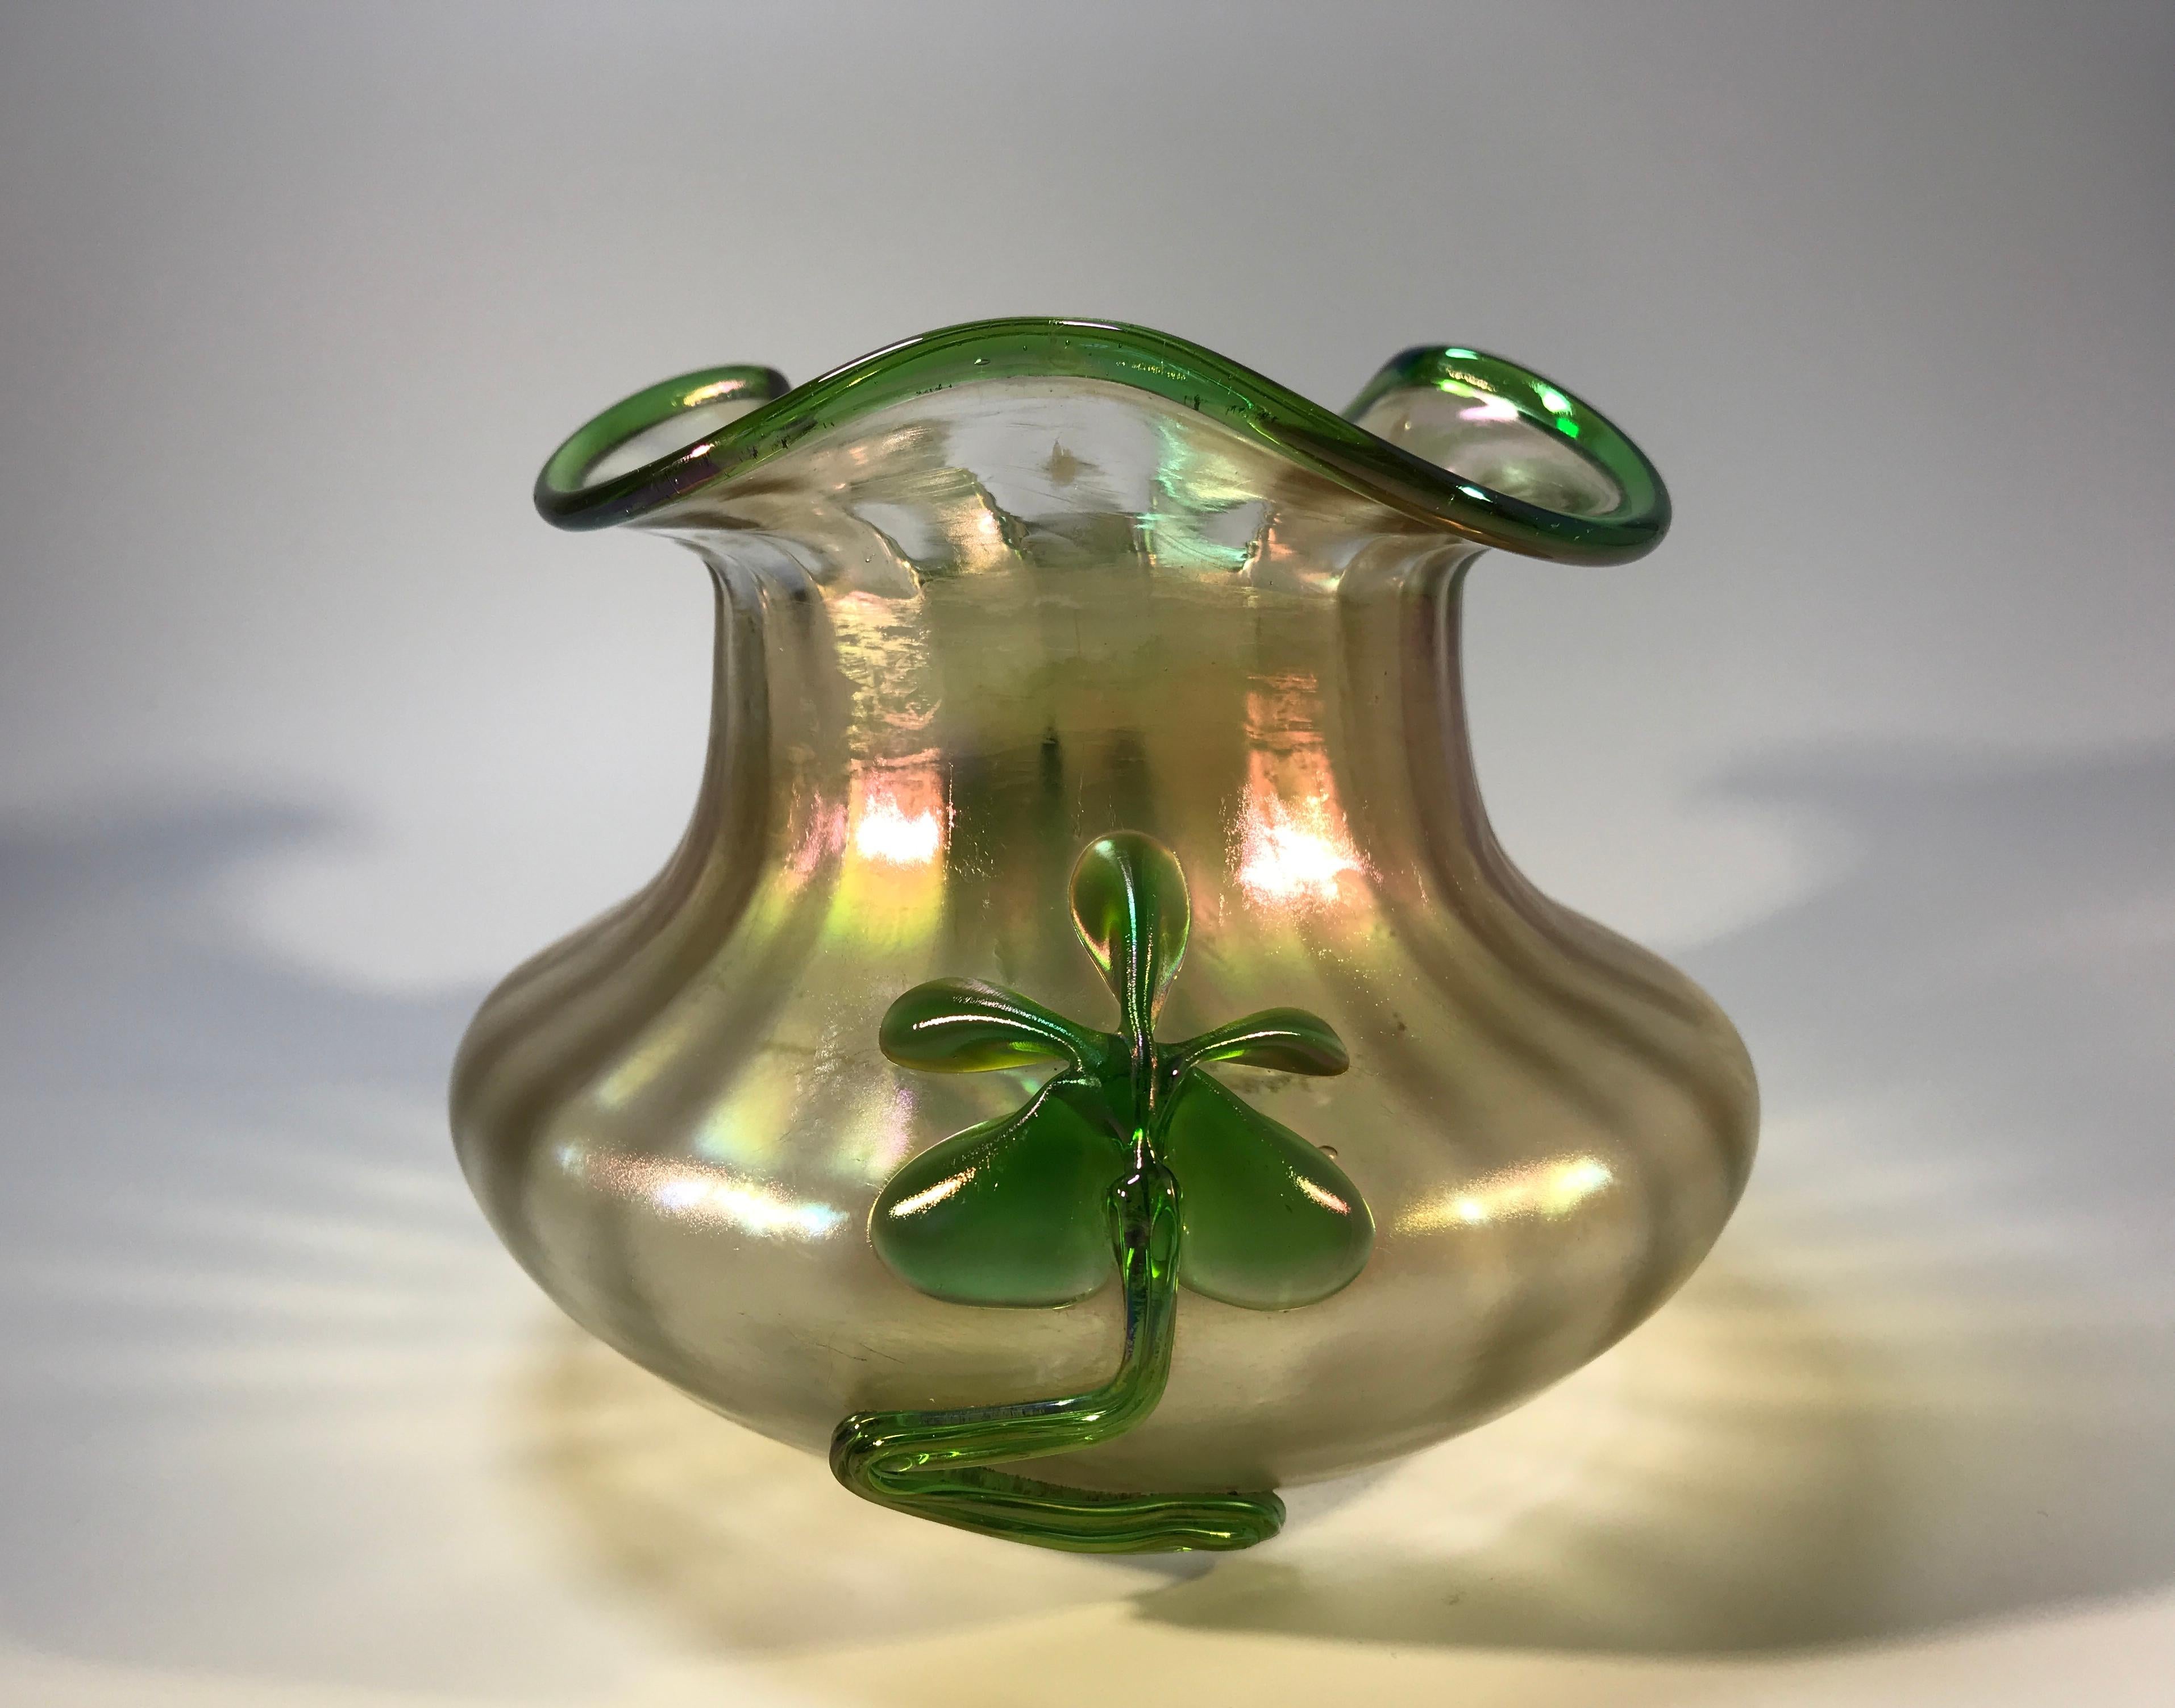 Vase en verre organique irisé, soufflé à la main, de style Art déco. Décoration appliquée de deux motifs floraux verts de part et d'autre et bordure verte sur le bord. La base présente un pontil poli à la meule, preuve de l'art des souffleurs de